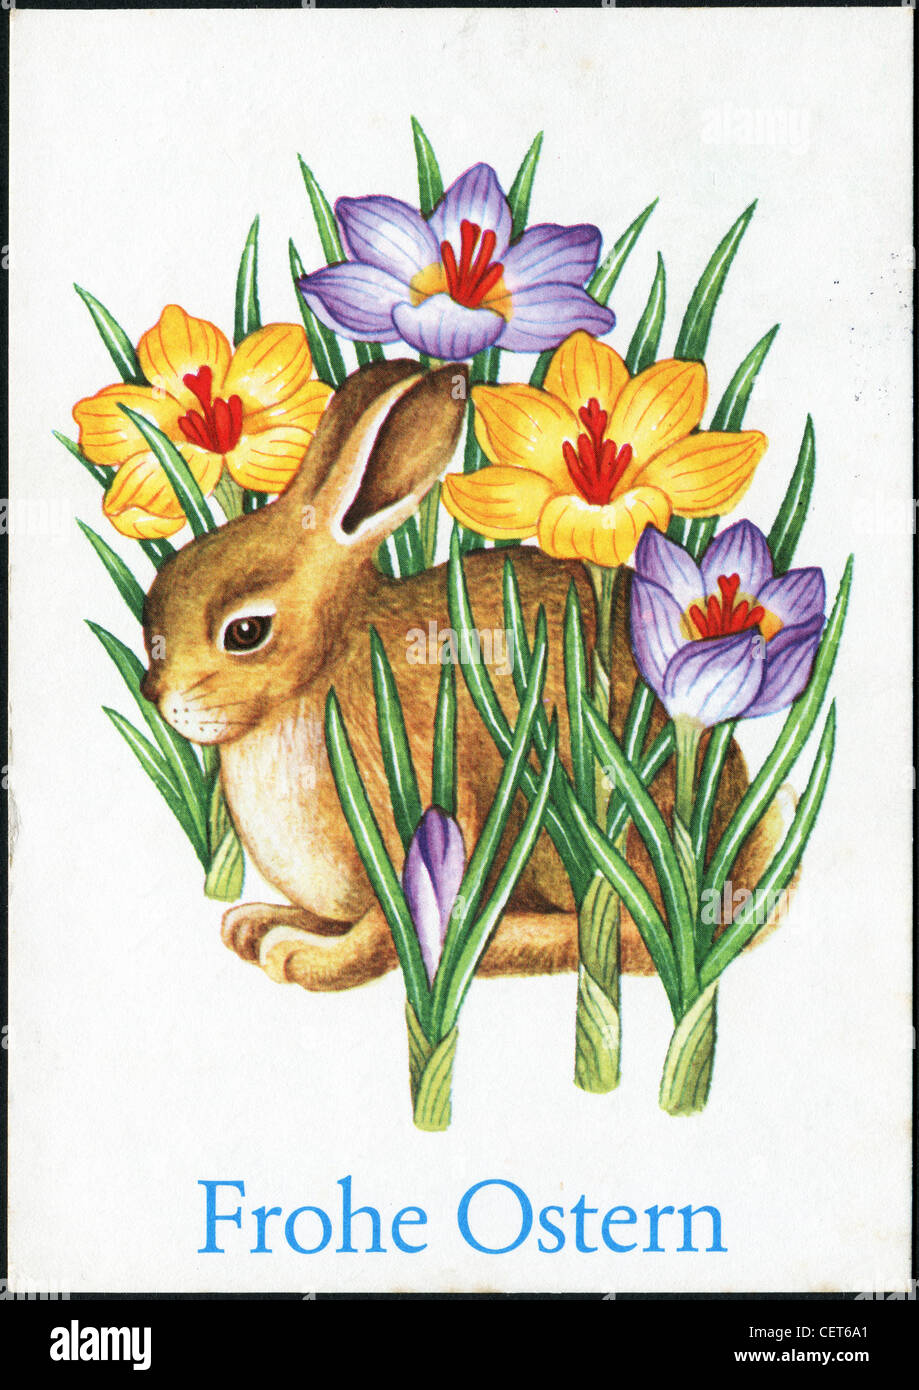 Deutschland-CIRCA 1978: Ostern Postkarte gedruckt in der DDR zeigt eine  Hase in der Wiese, ca. 1978. Deutscher Text: Frohe Ostern! Stockfotografie  - Alamy